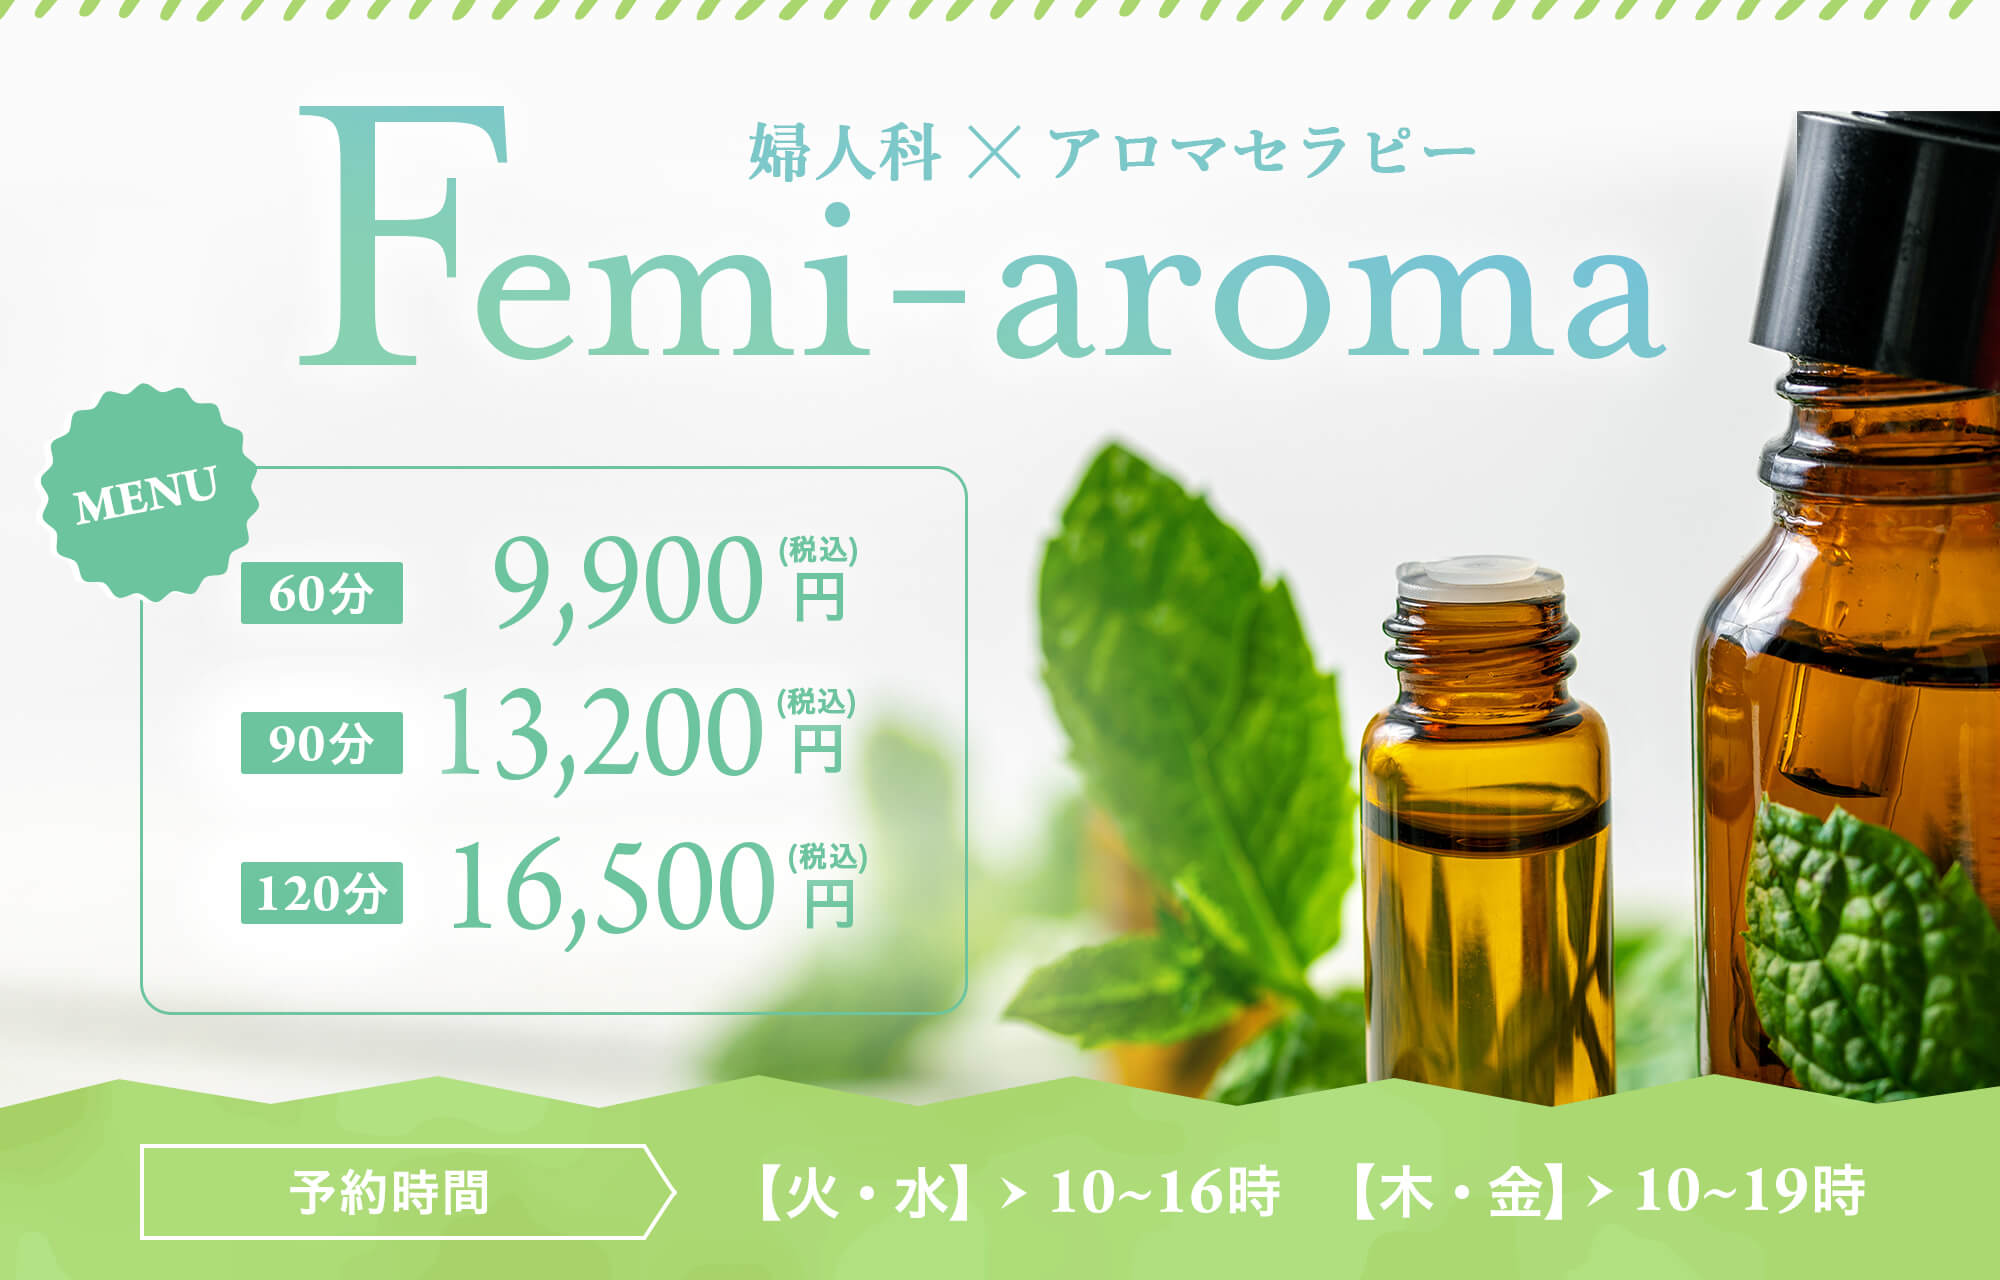 アロマテラピー「Femi-aroma」